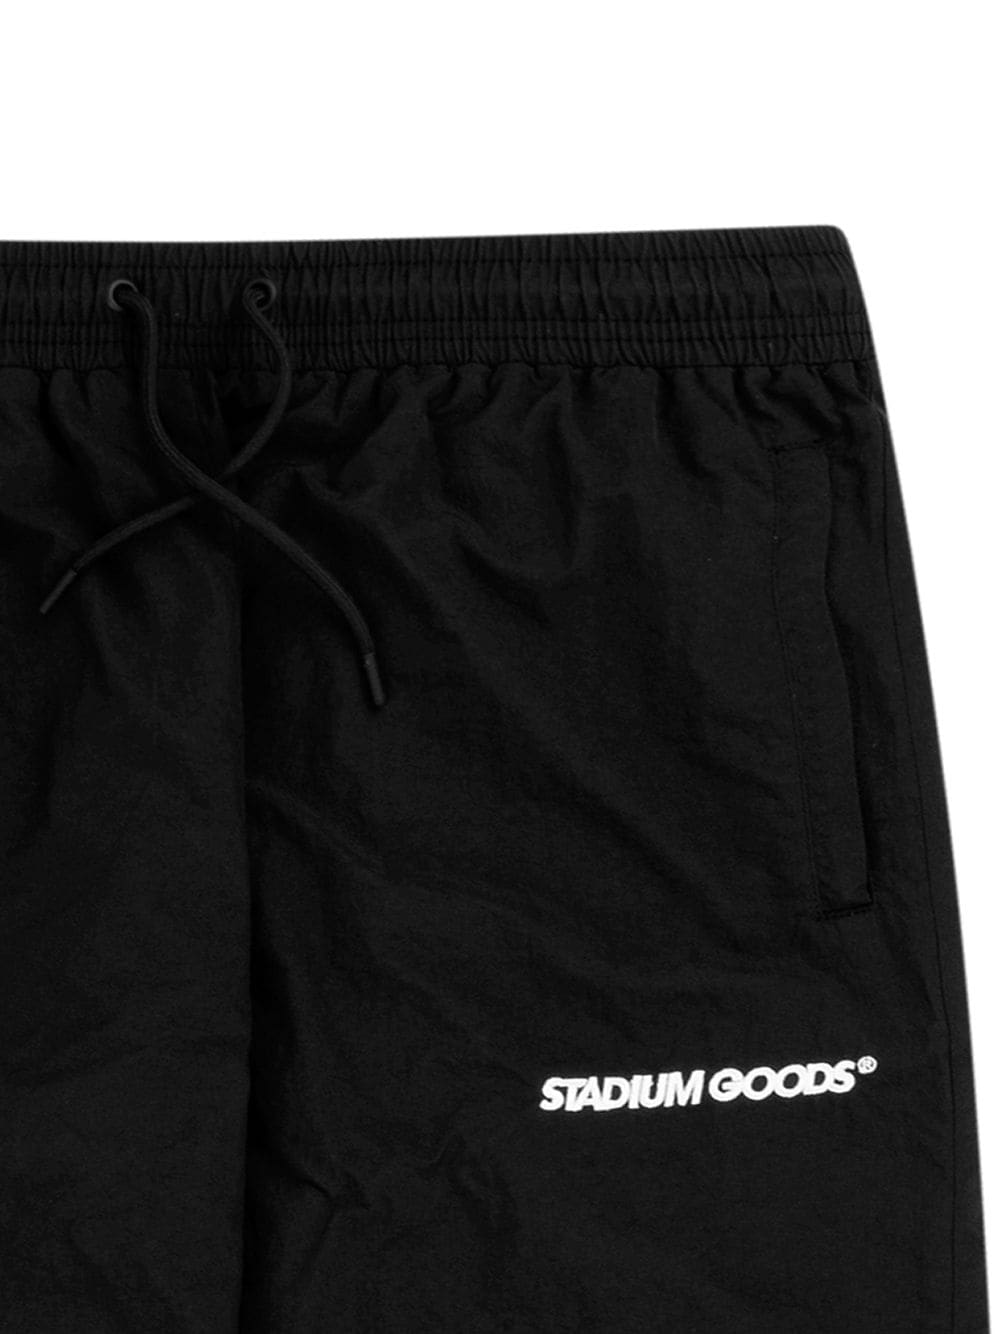 фото Stadium goods спортивные брюки с логотипом